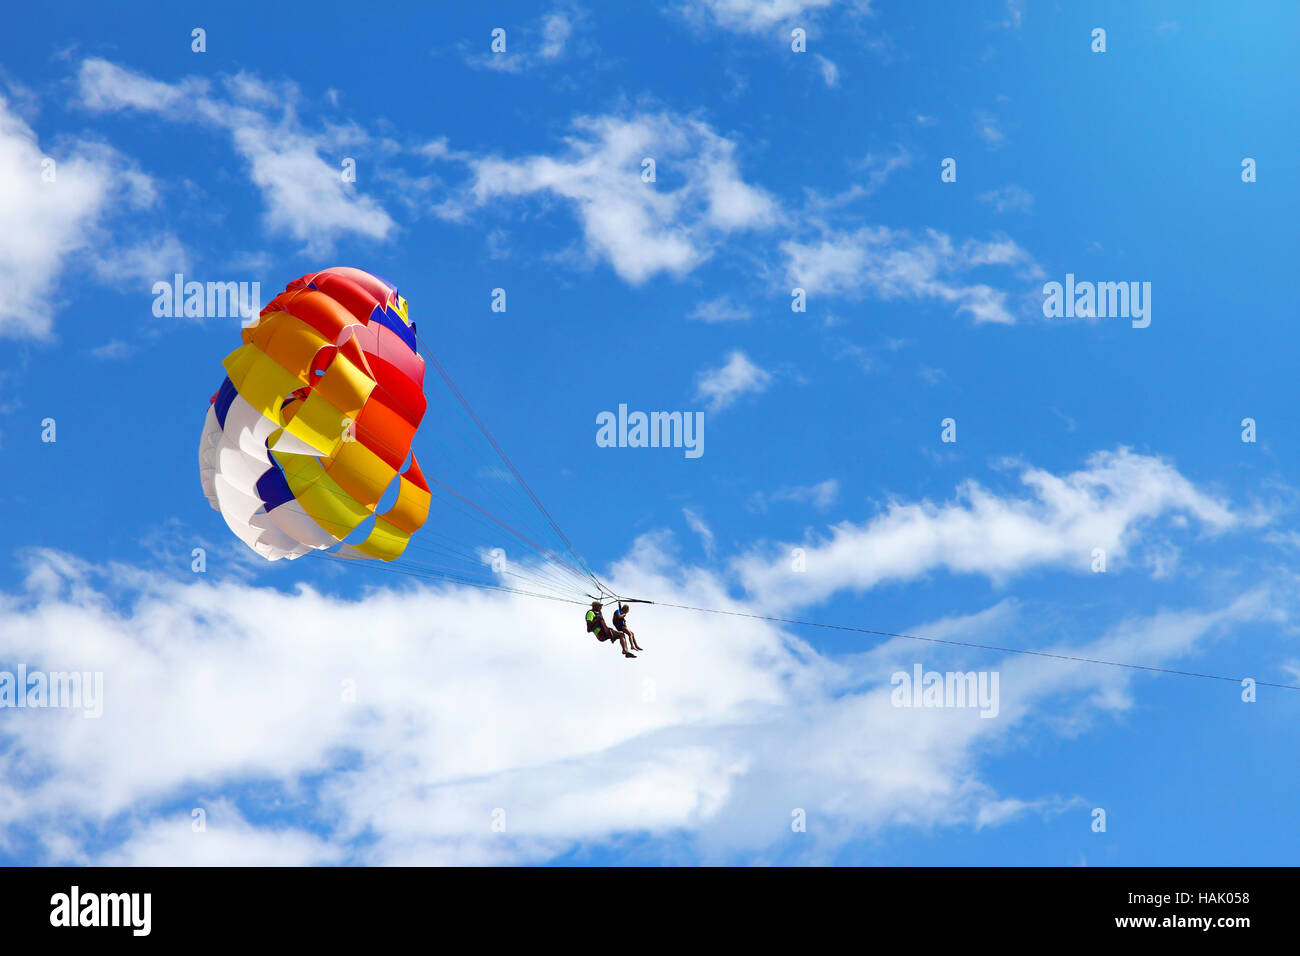 Parasailing - abgeschleppt Fallschirm gegen blauen Himmel Stockfoto